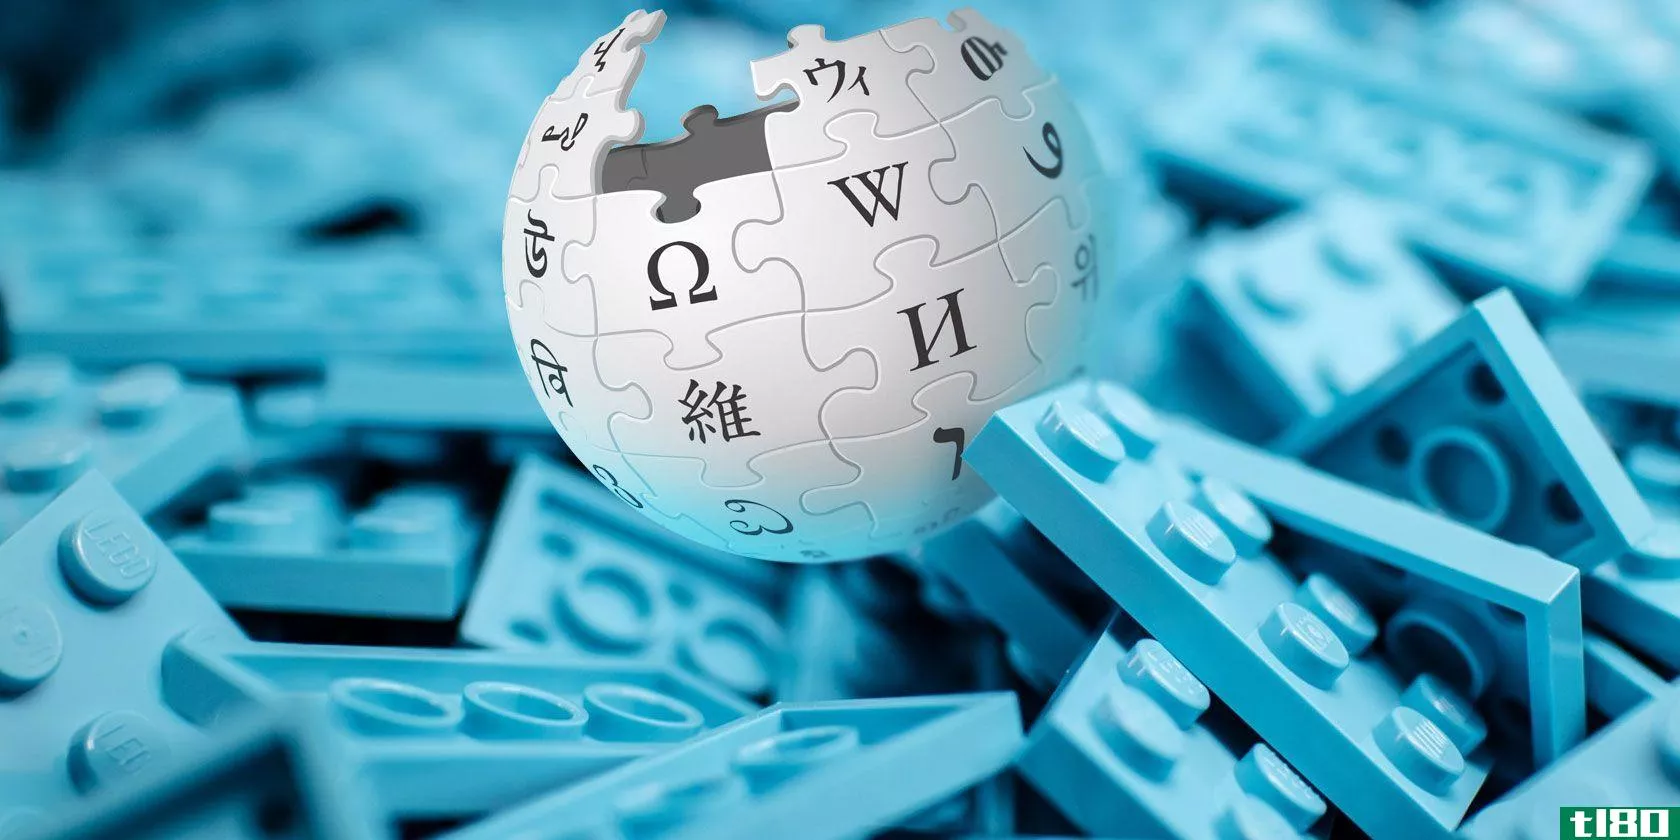 5维基百科的工具或更好的在线免费百科全书的替代品